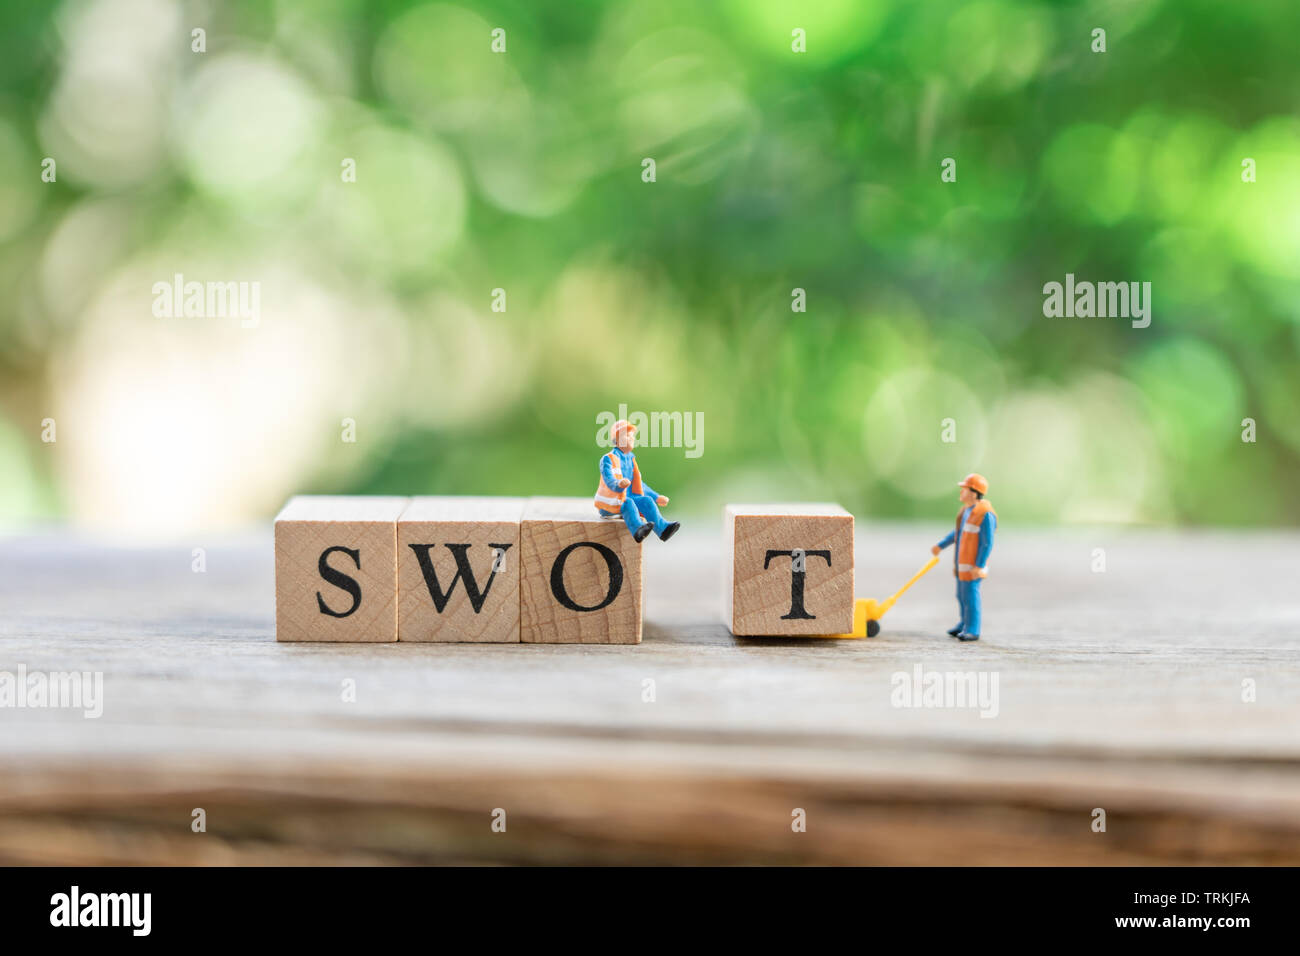 Miniatur Menschen Bauarbeiter mit Holz Wort Team als Hintergrund Geschäfts- und SWOT-Konzept mit kopieren. Stockfoto